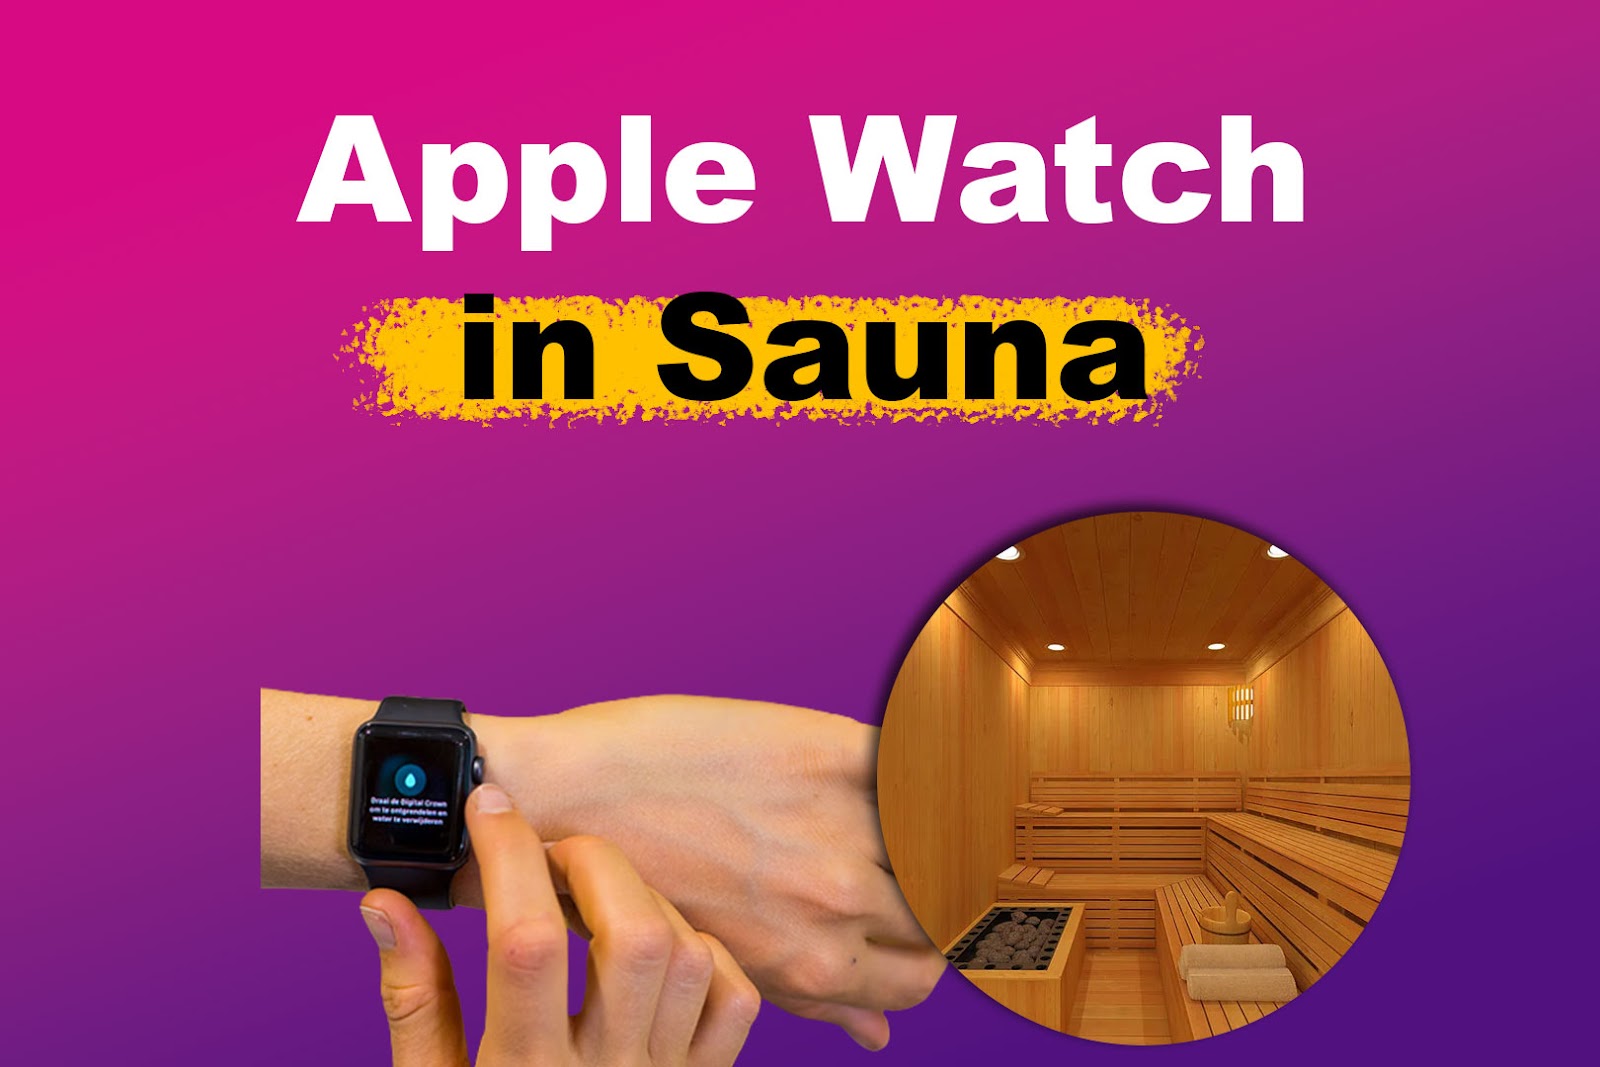 Apple Watch in Sauna